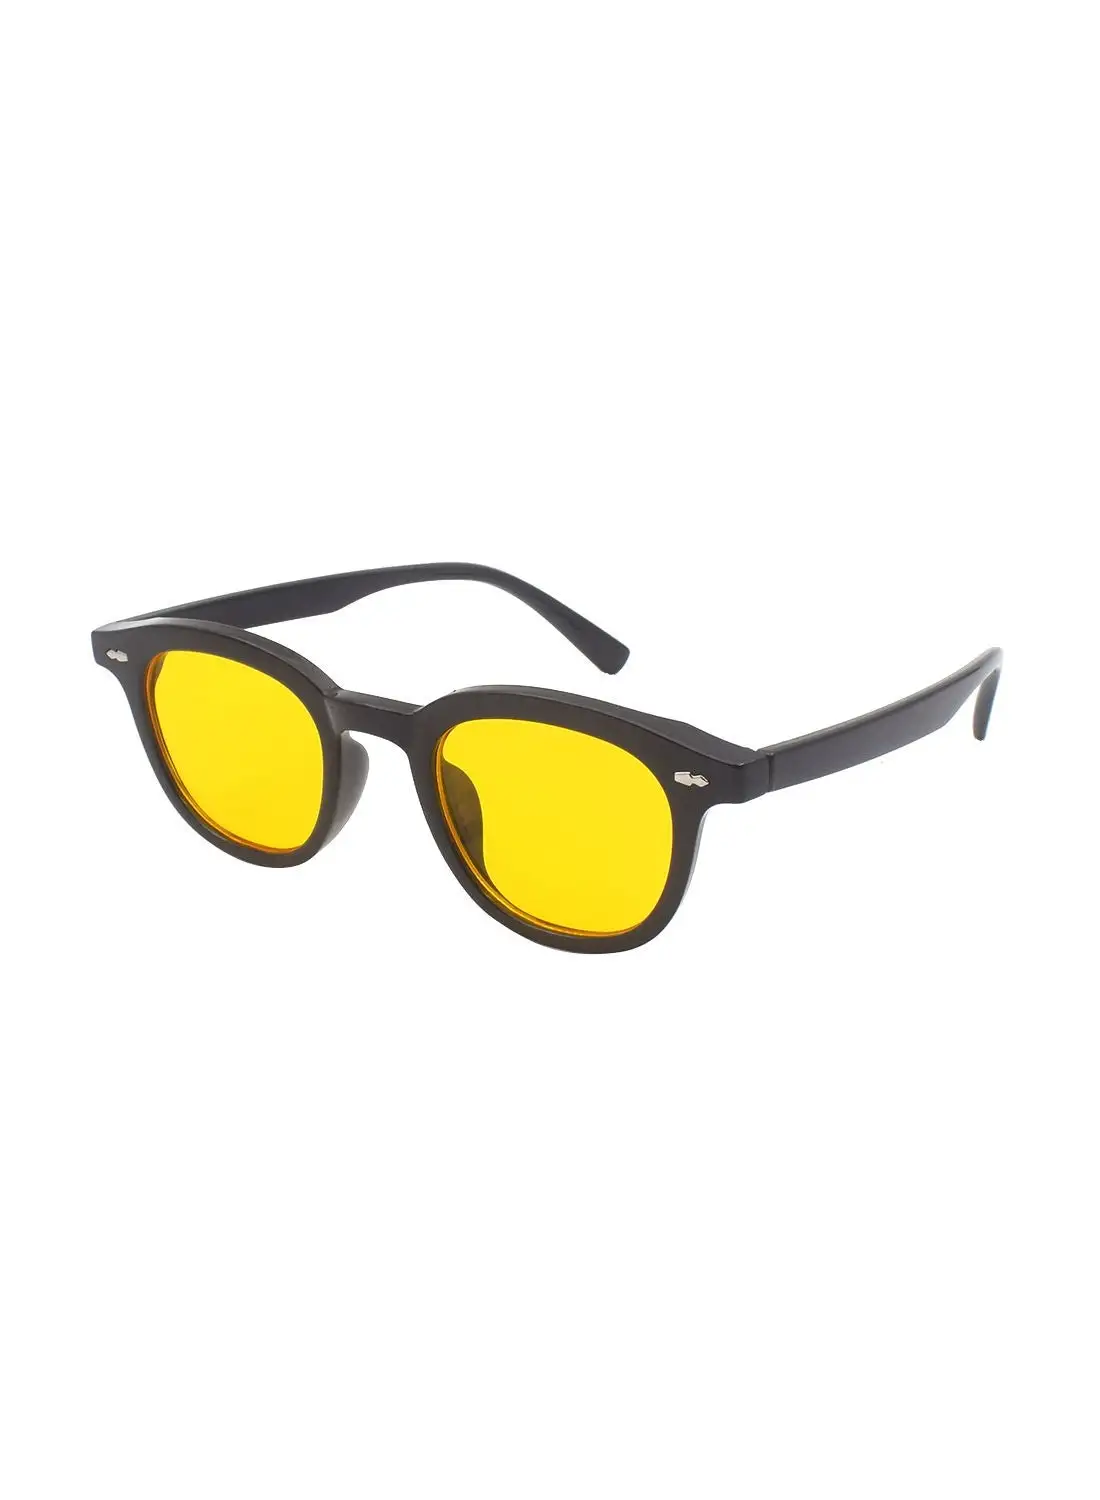 مايز نظارة شمسية بيضاوية الشكل EE20X066-2